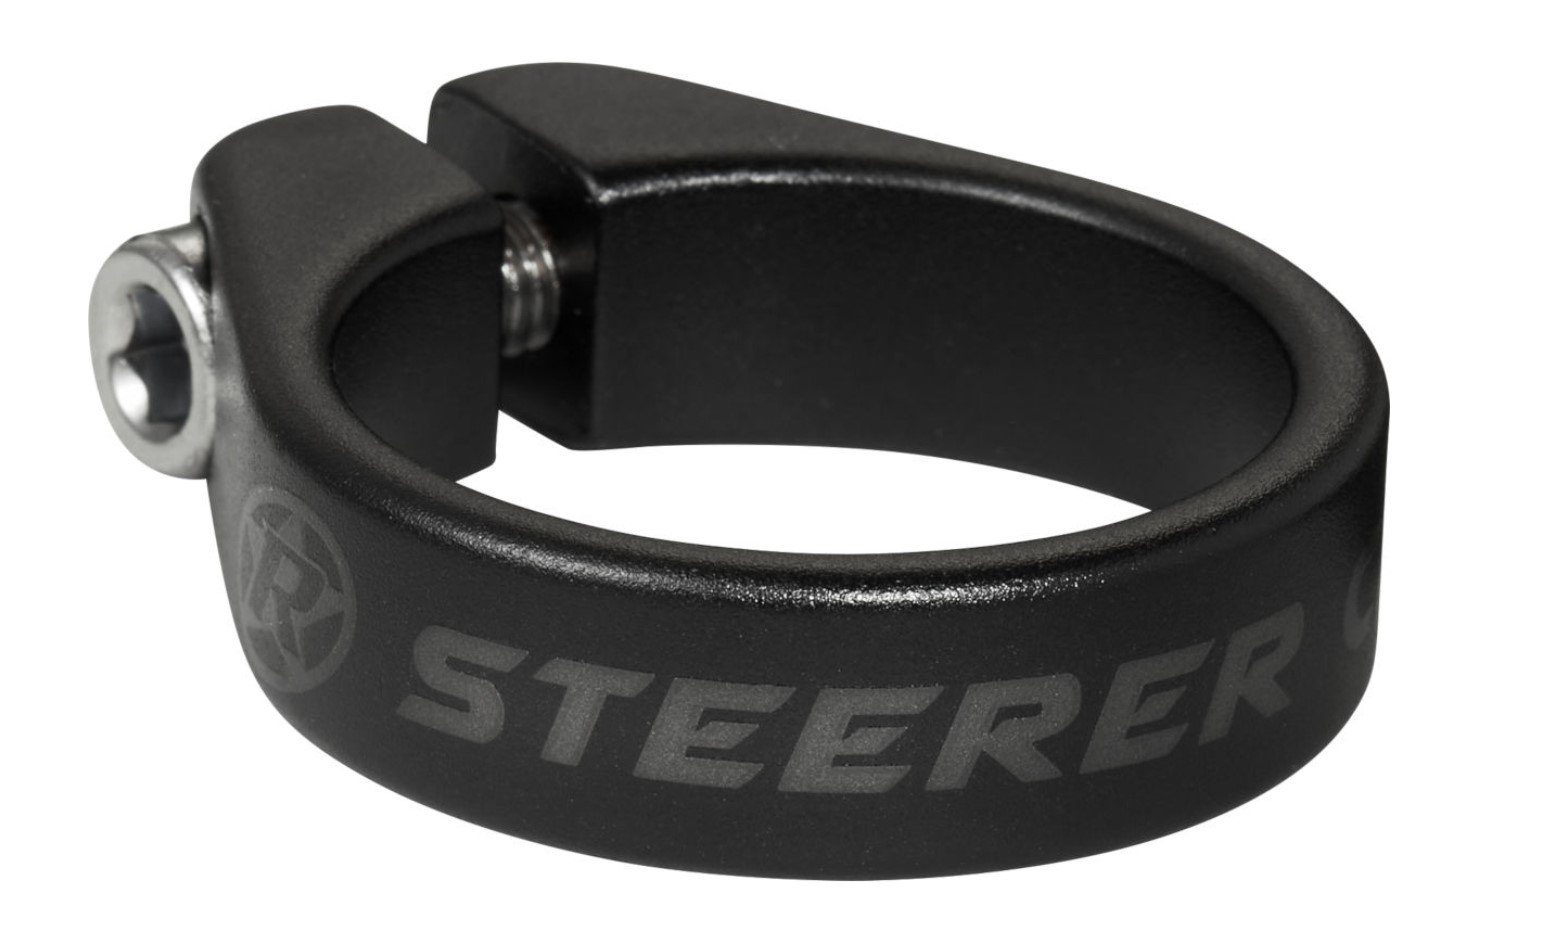 "Steerer Fahrradlenker 1 Spacer Reverse Schwarz Klemmbarer Reverse Clamp" 10mm 1/8"